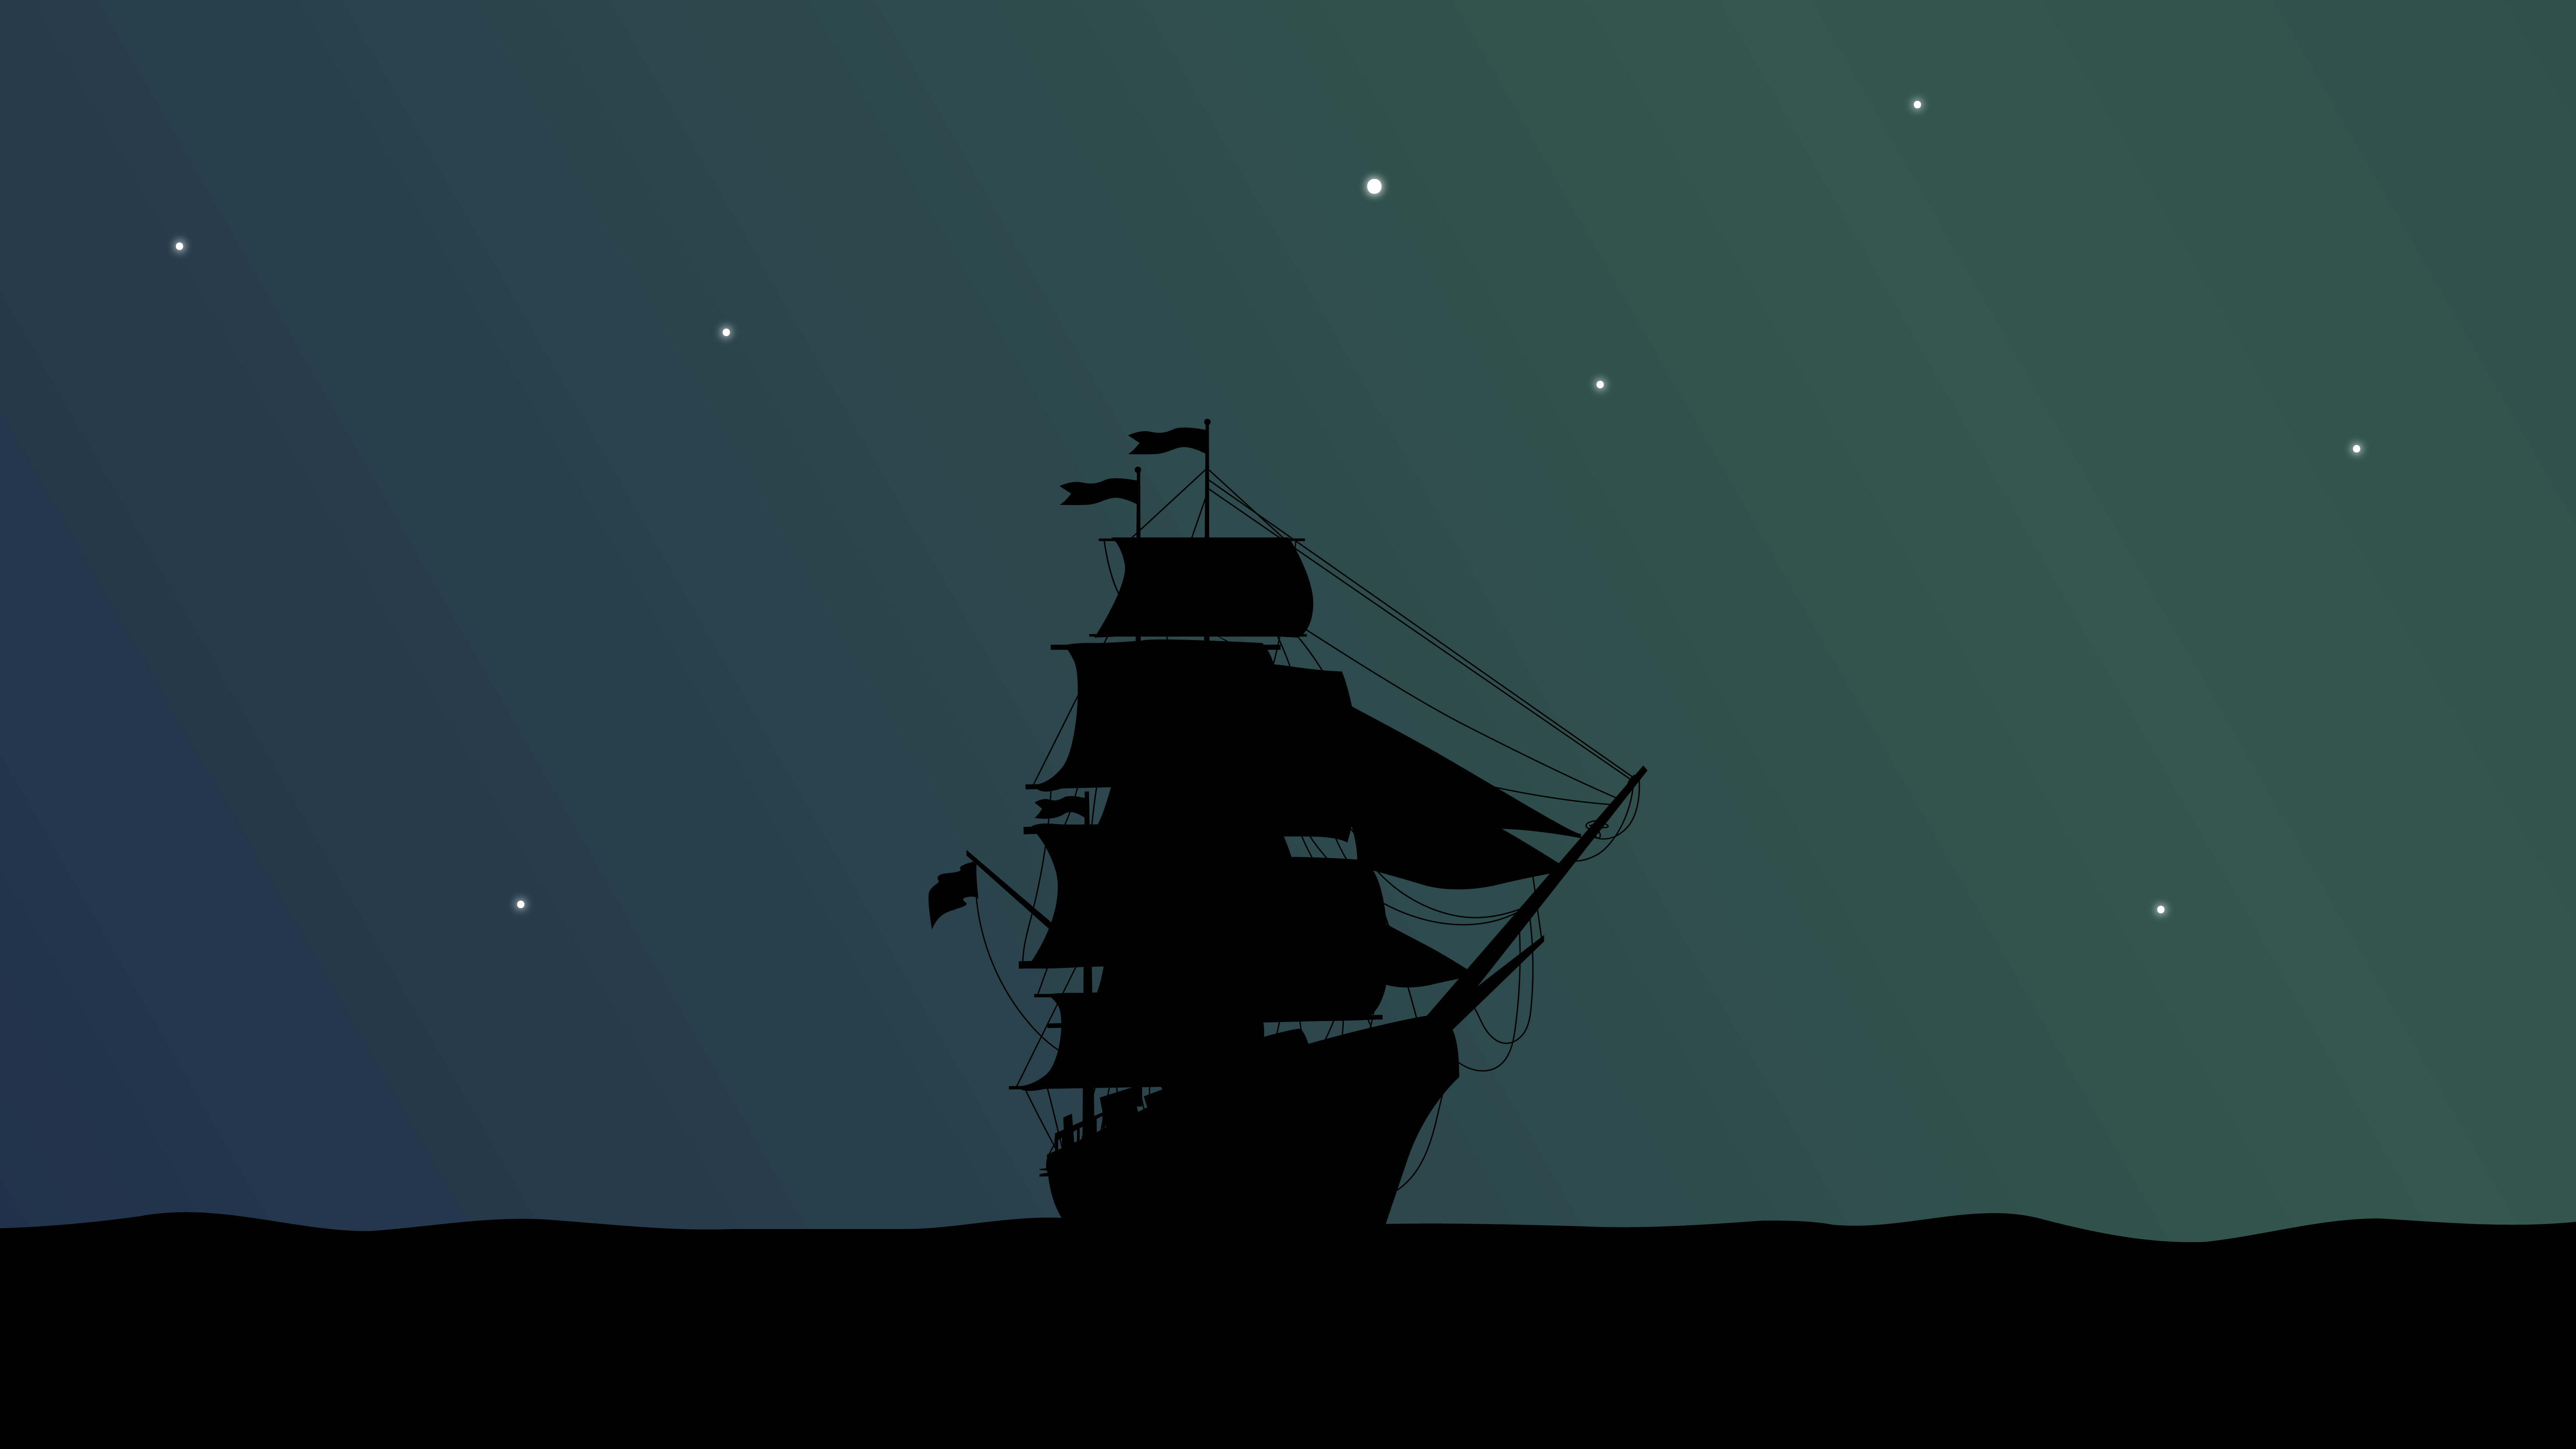 Pirate Ship Minimal Wallpapers